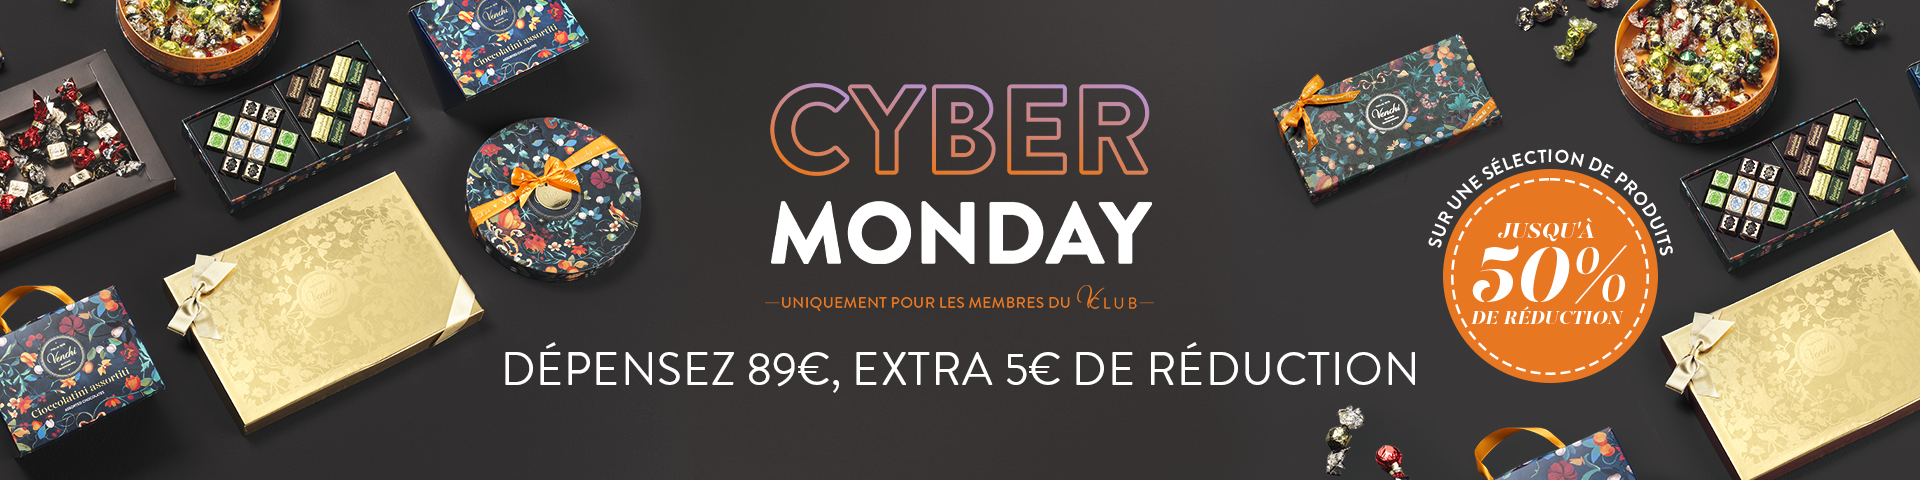 Cyber Monday uniquement pour les membres du V-Club dépensez 89€, extra € de réduction